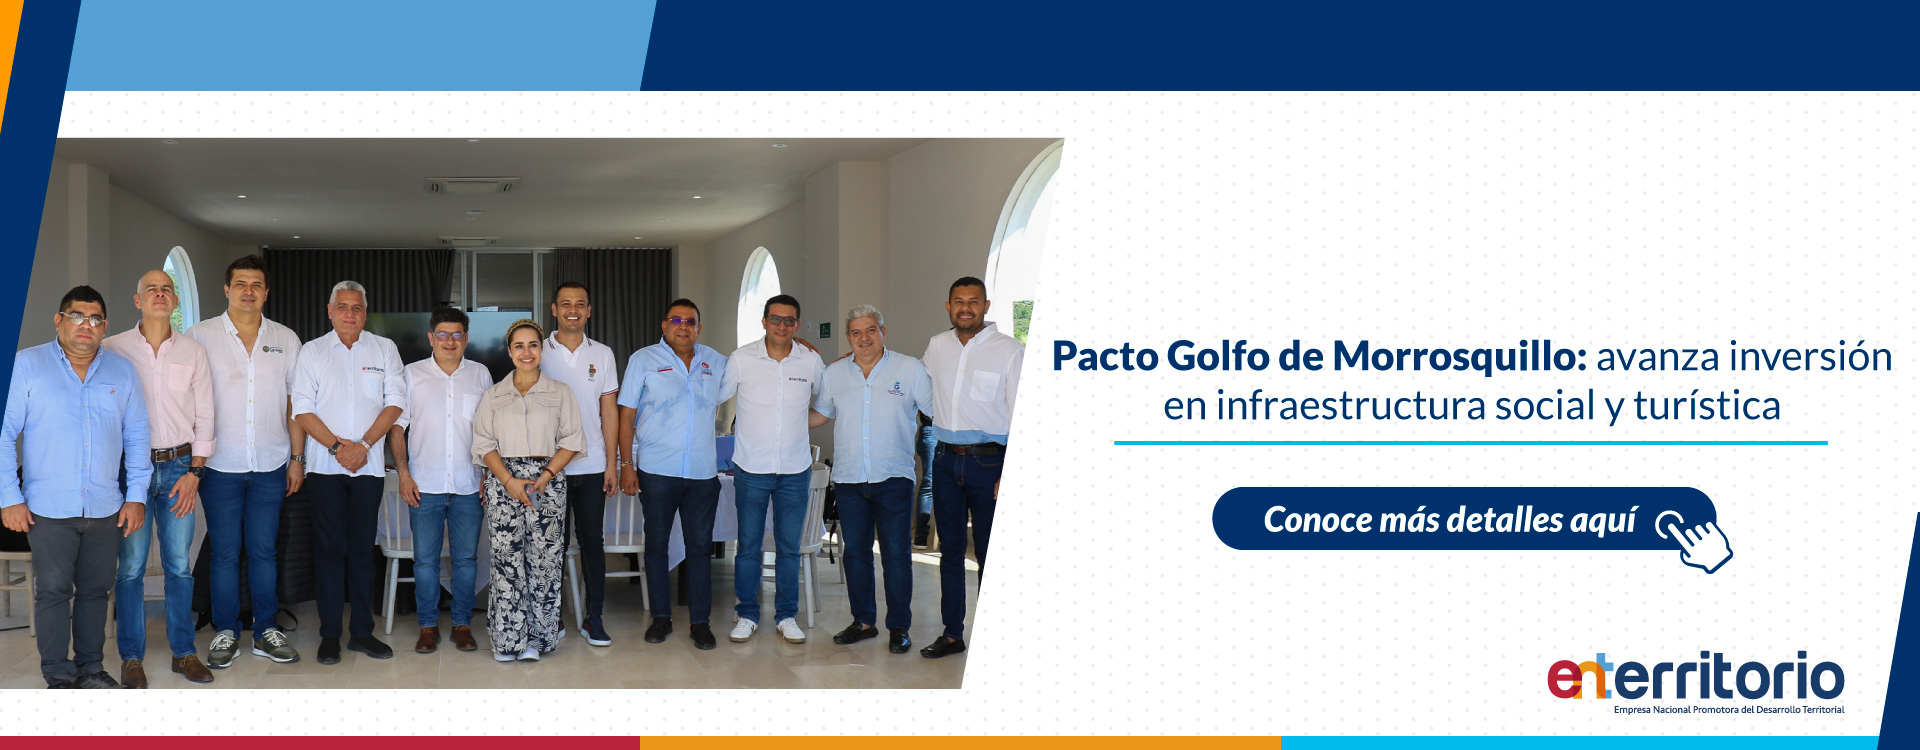 Pacto Golfo de Morrosquillo: avanza inversión en infraestructura social y turística